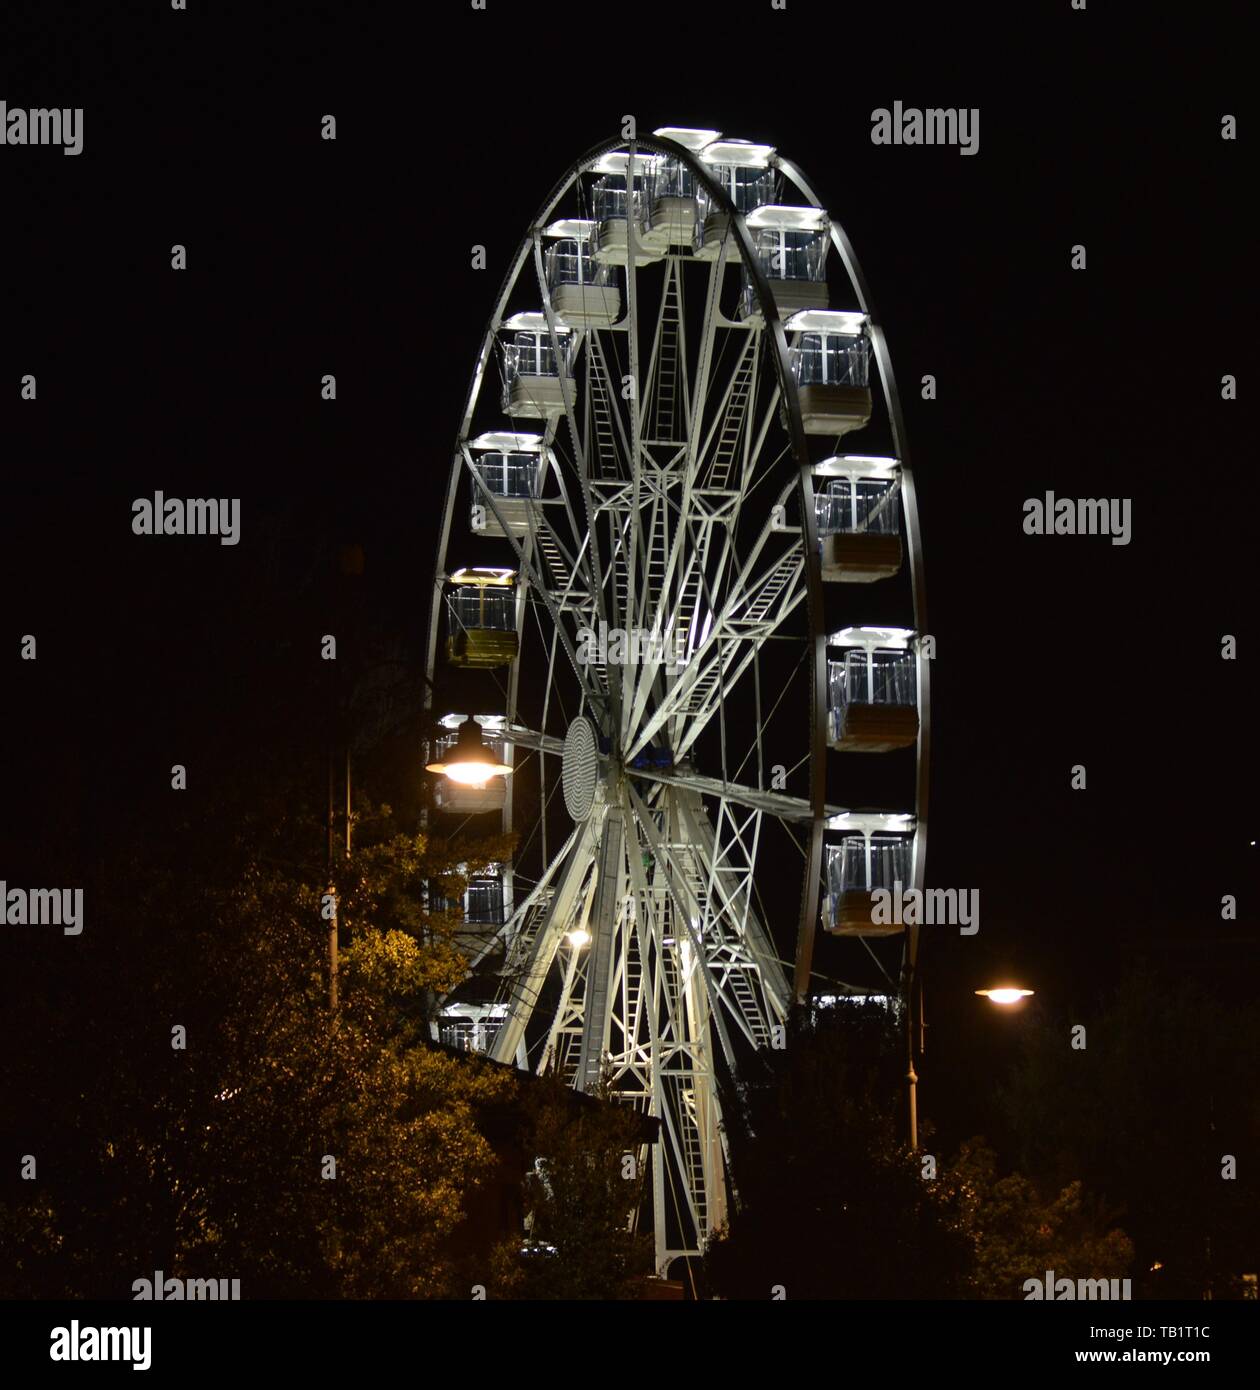 Beleuchtetes Riesenrad, Nacht Fotografie Stockfoto